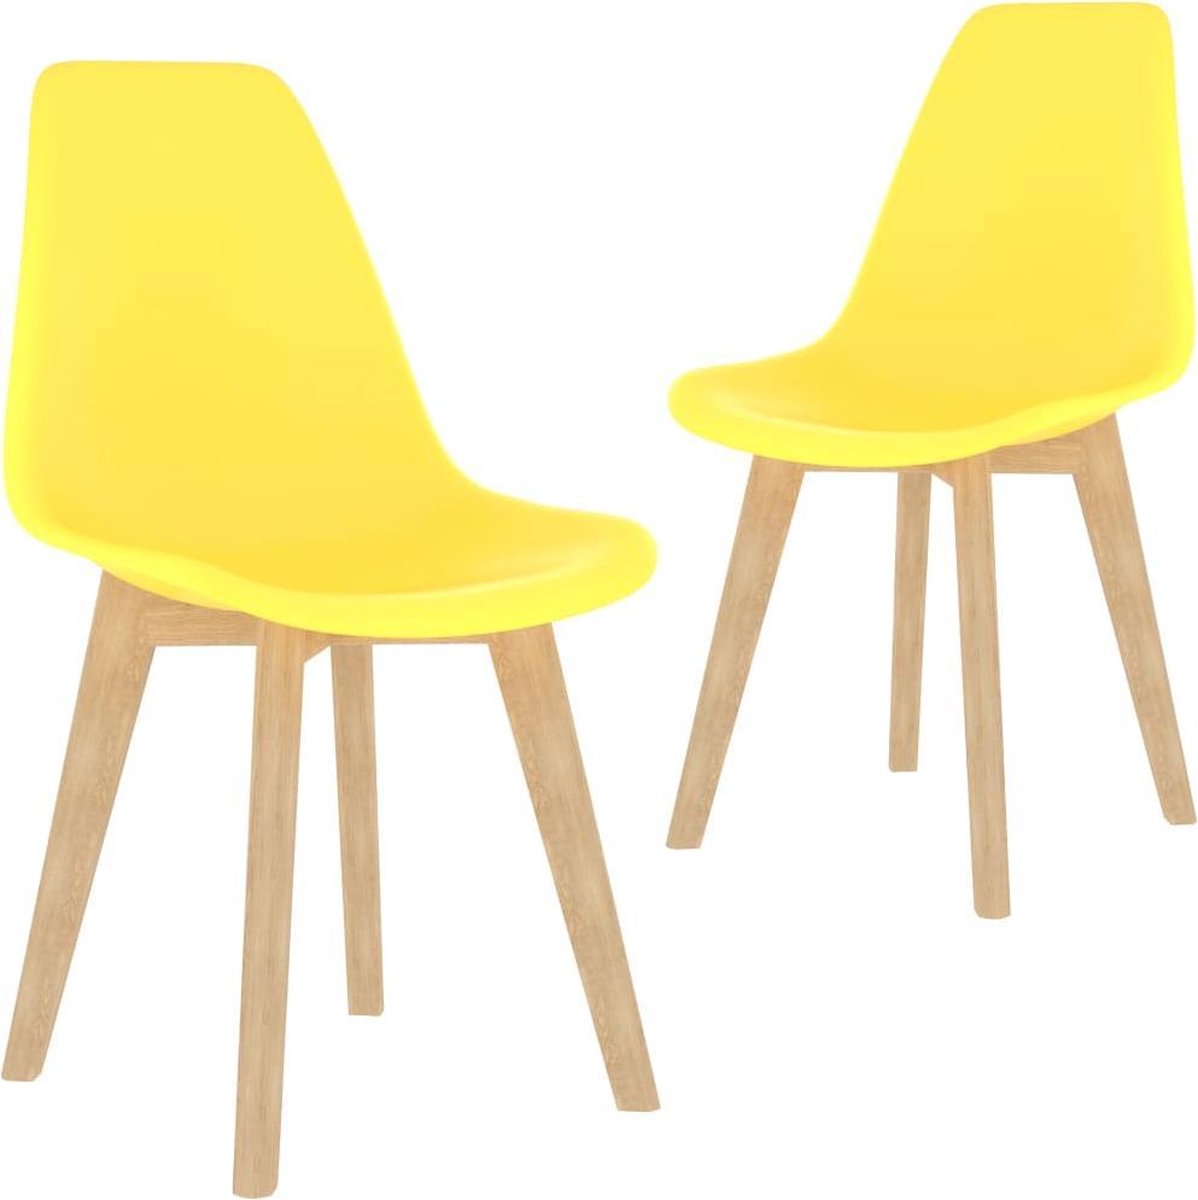 Nord Blanc 2 Moderne kunststof eetkamerstoelen stoelen geel ergonomische kuipstoelen Nordic Blanc Palerma Design yellow ergonomisch stoel zetel woonkamerstoelen zitting stevig hout plastic Scandinavisch Set van 2 stuks